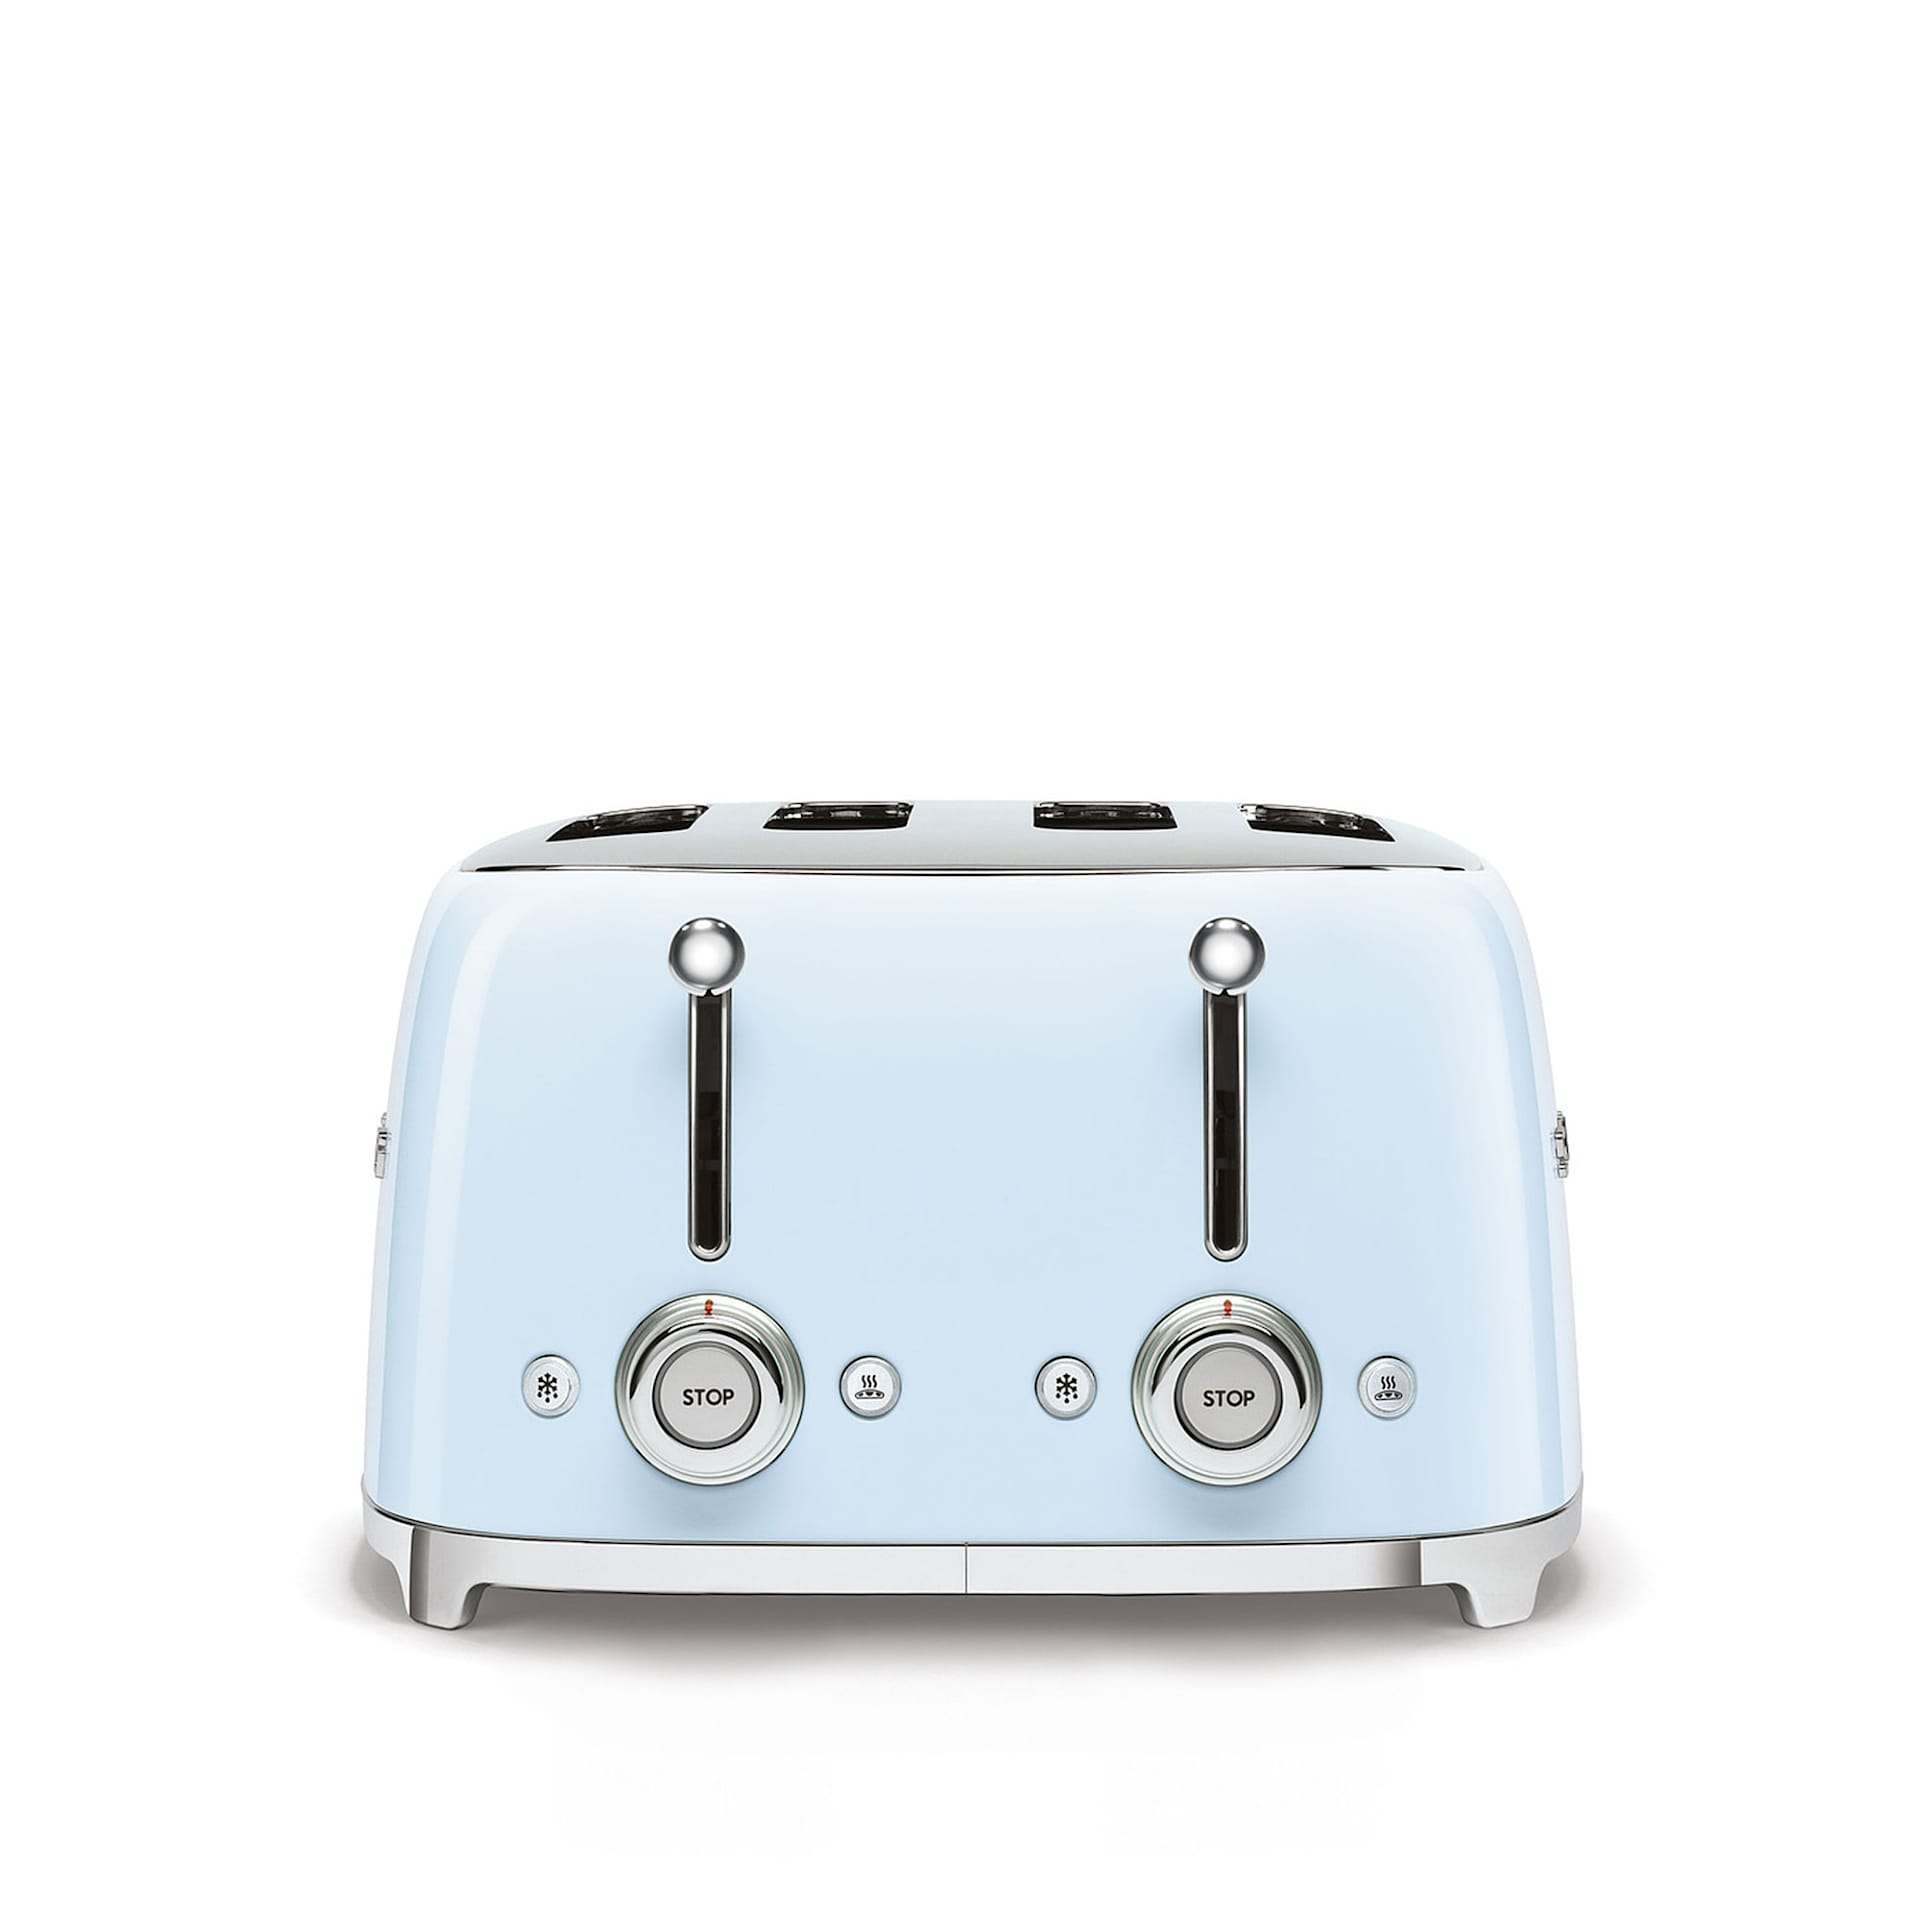 Smeg 4 Slot Toaster Pastel Blue - Smeg - NO GA